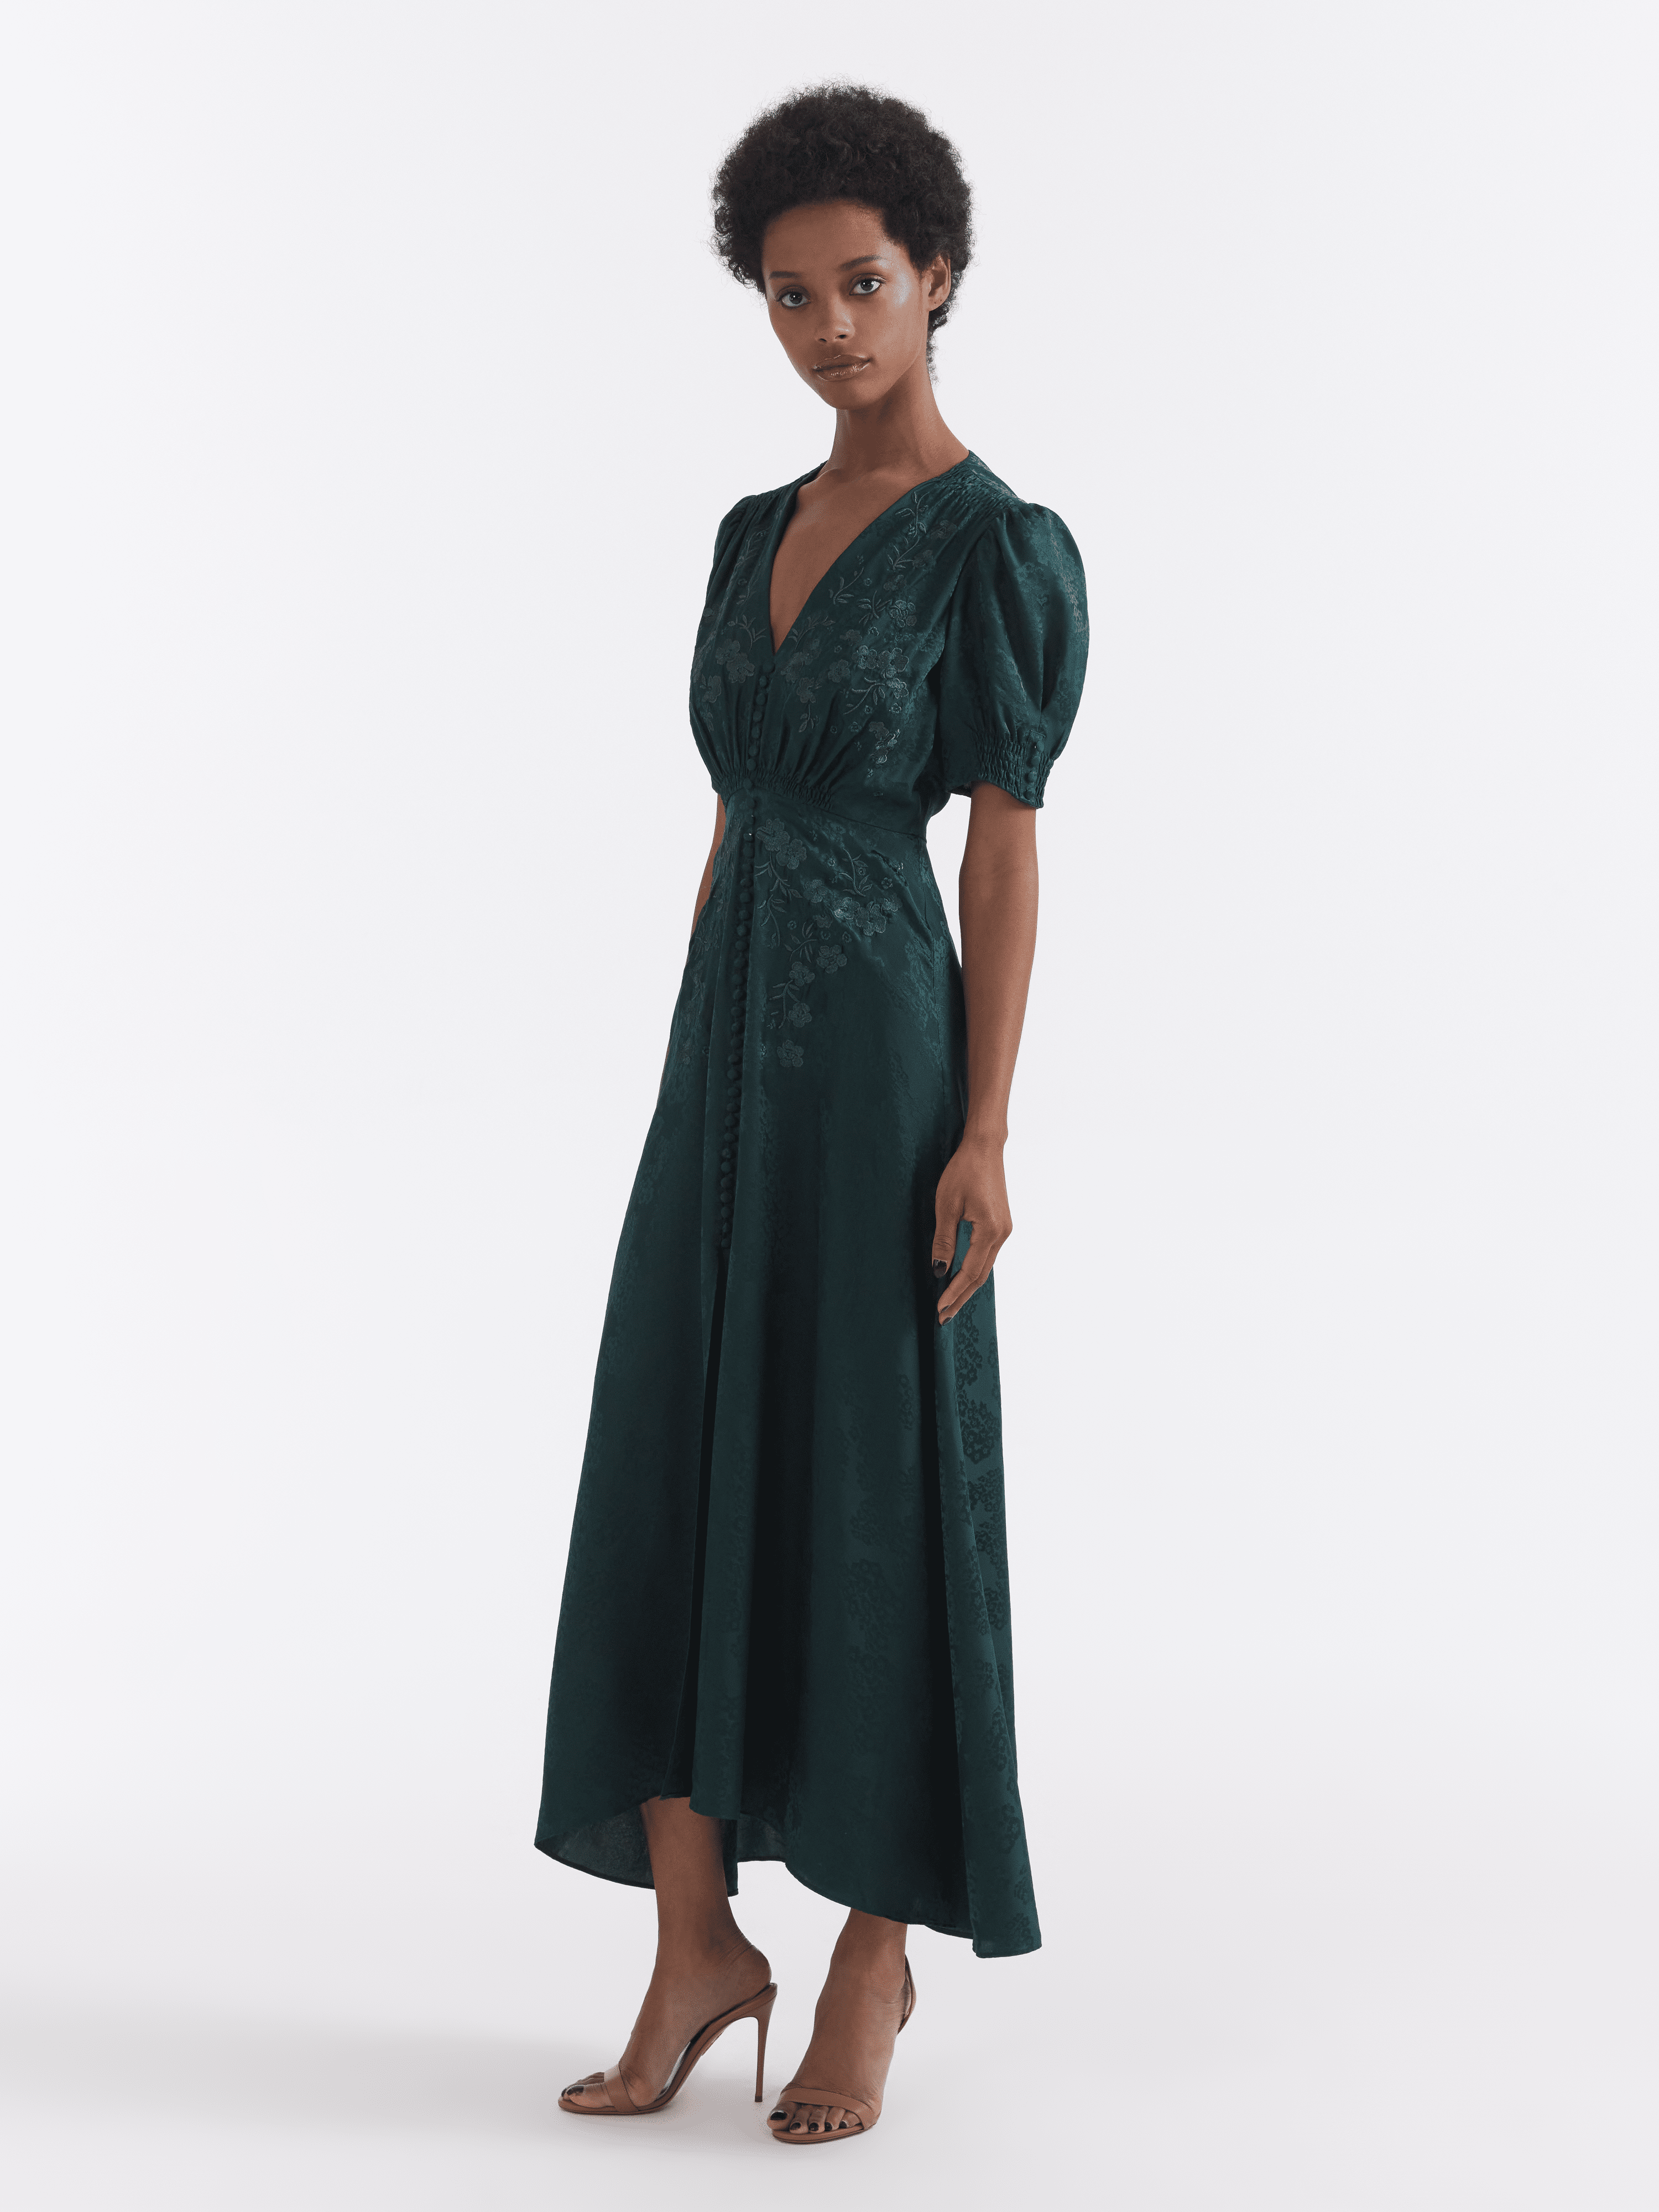 Lea Long Dress in Forest Green